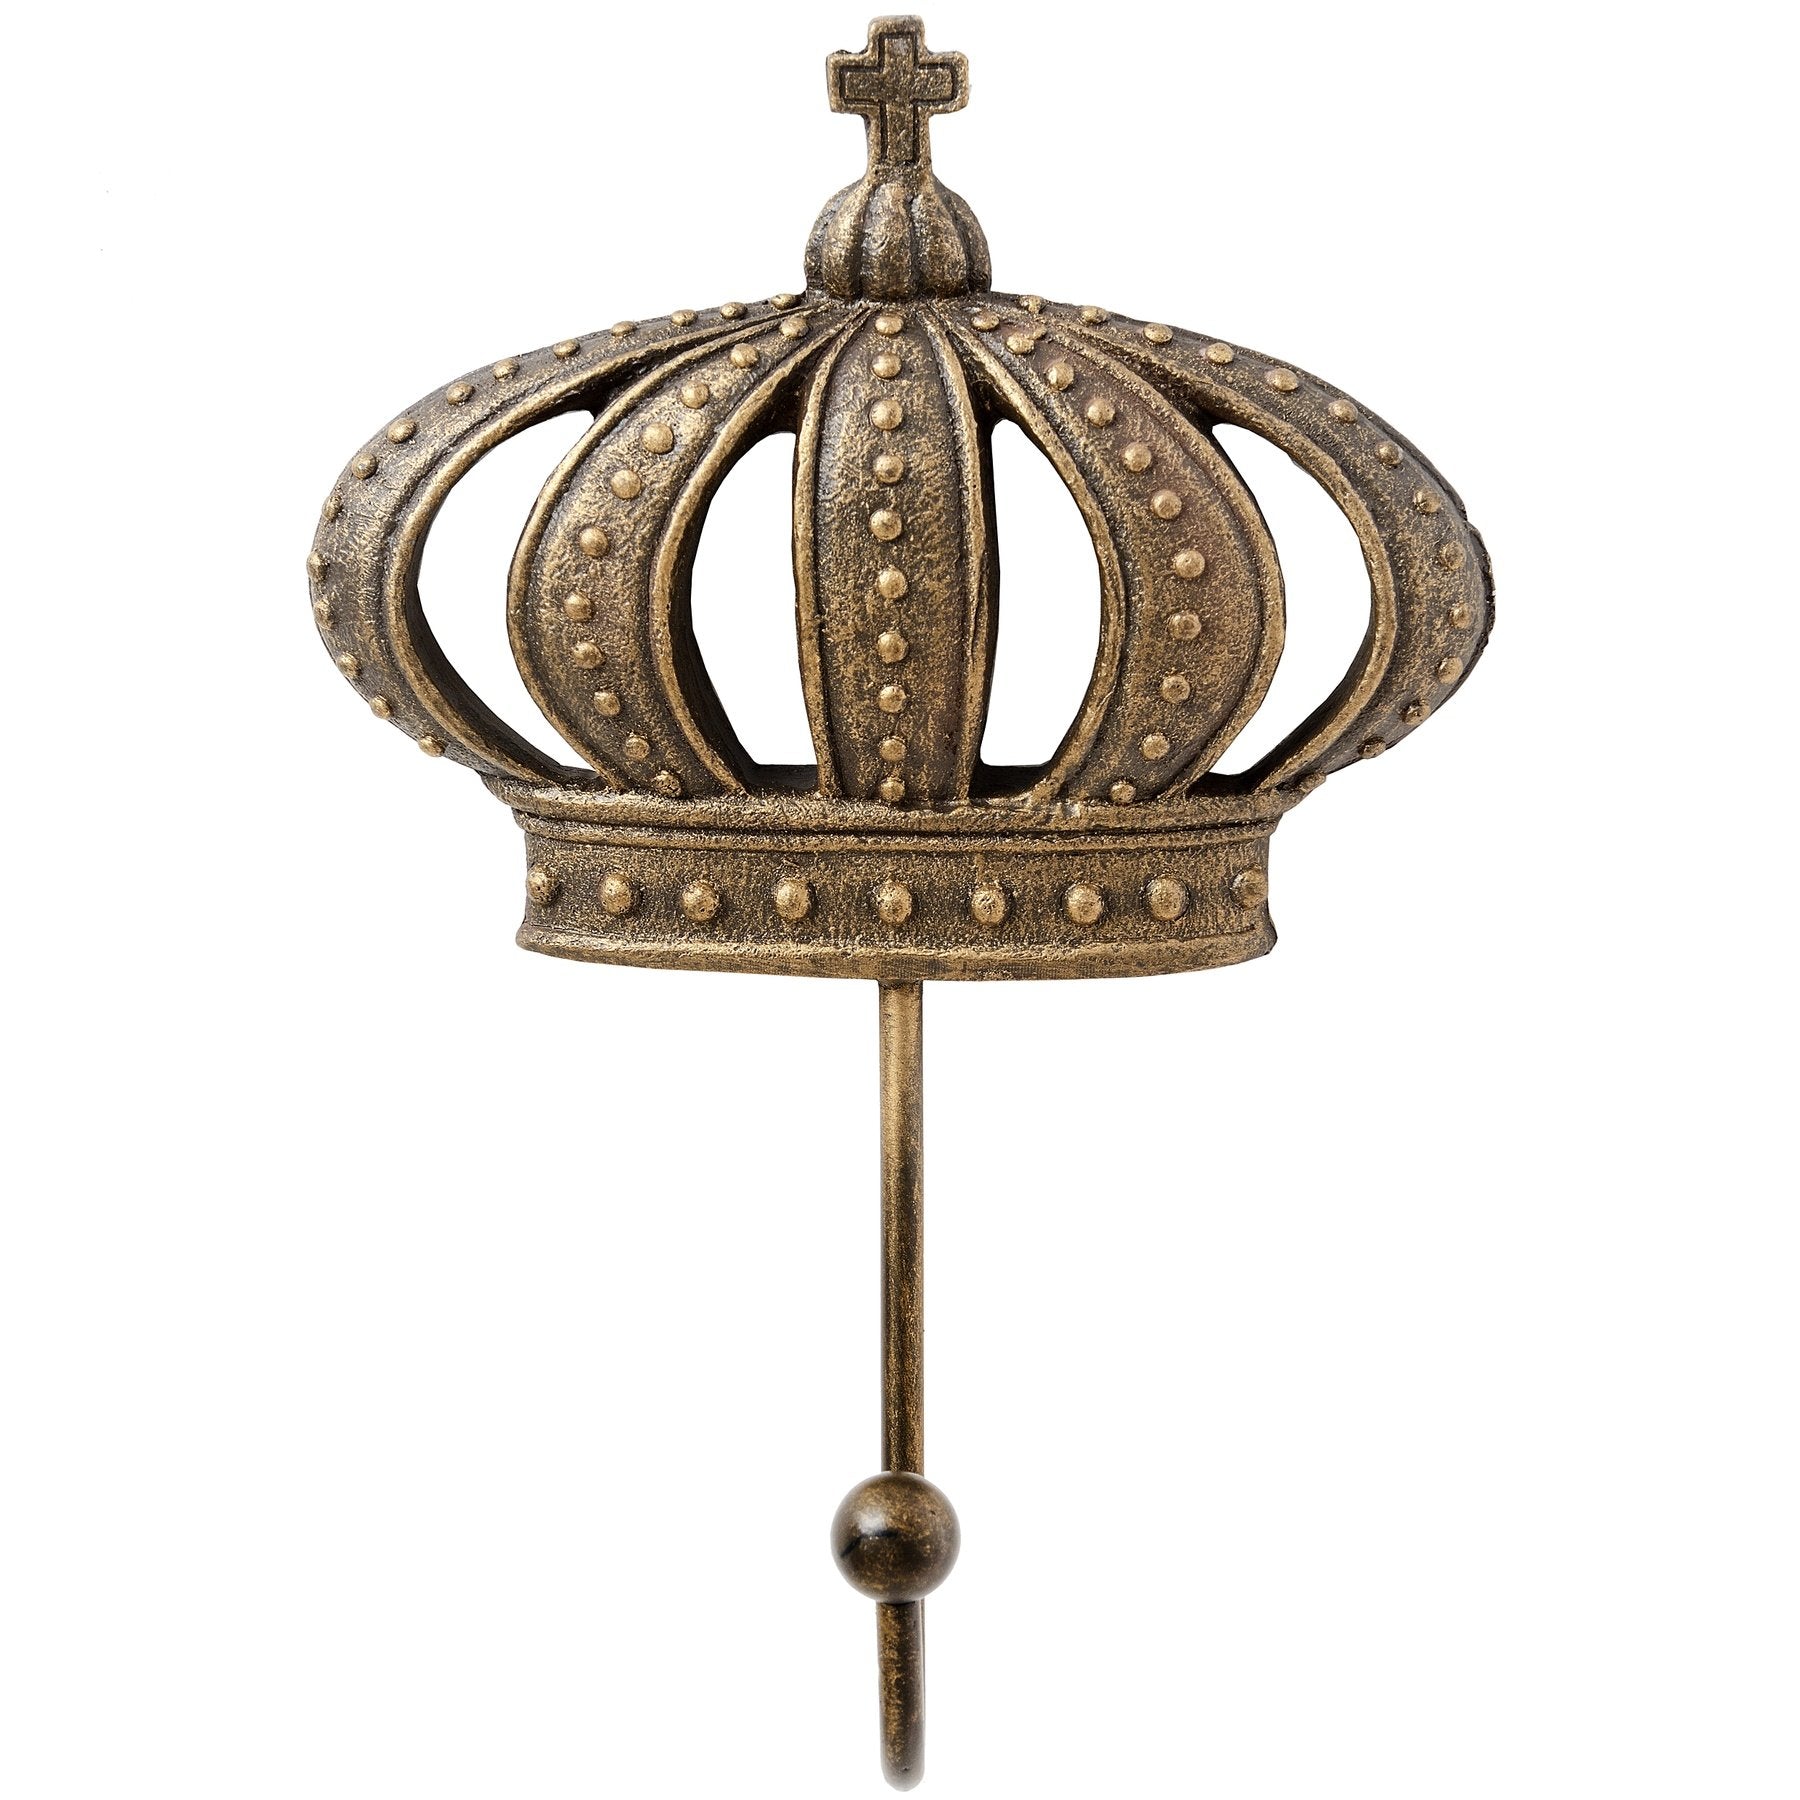 King & Queen Antique Gold Crown Coat Hooks